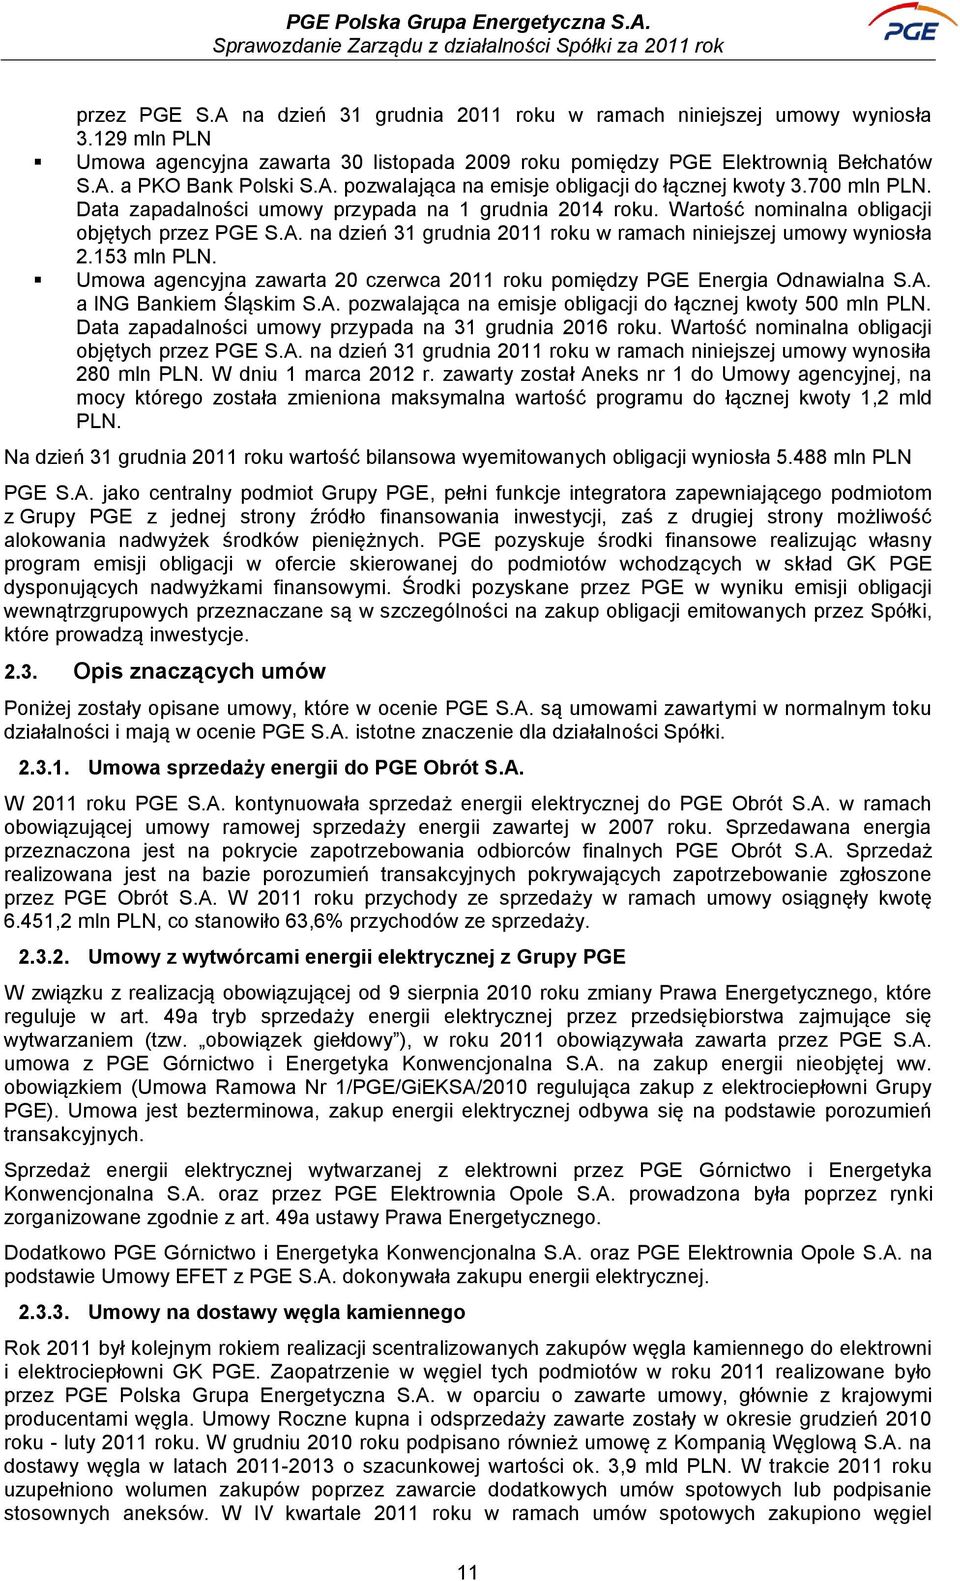 153 mln PLN. Umowa agencyjna zawarta 20 czerwca 2011 roku pomiędzy PGE Energia Odnawialna S.A. a ING Bankiem Śląskim S.A. pozwalająca na emisje obligacji do łącznej kwoty 500 mln PLN.